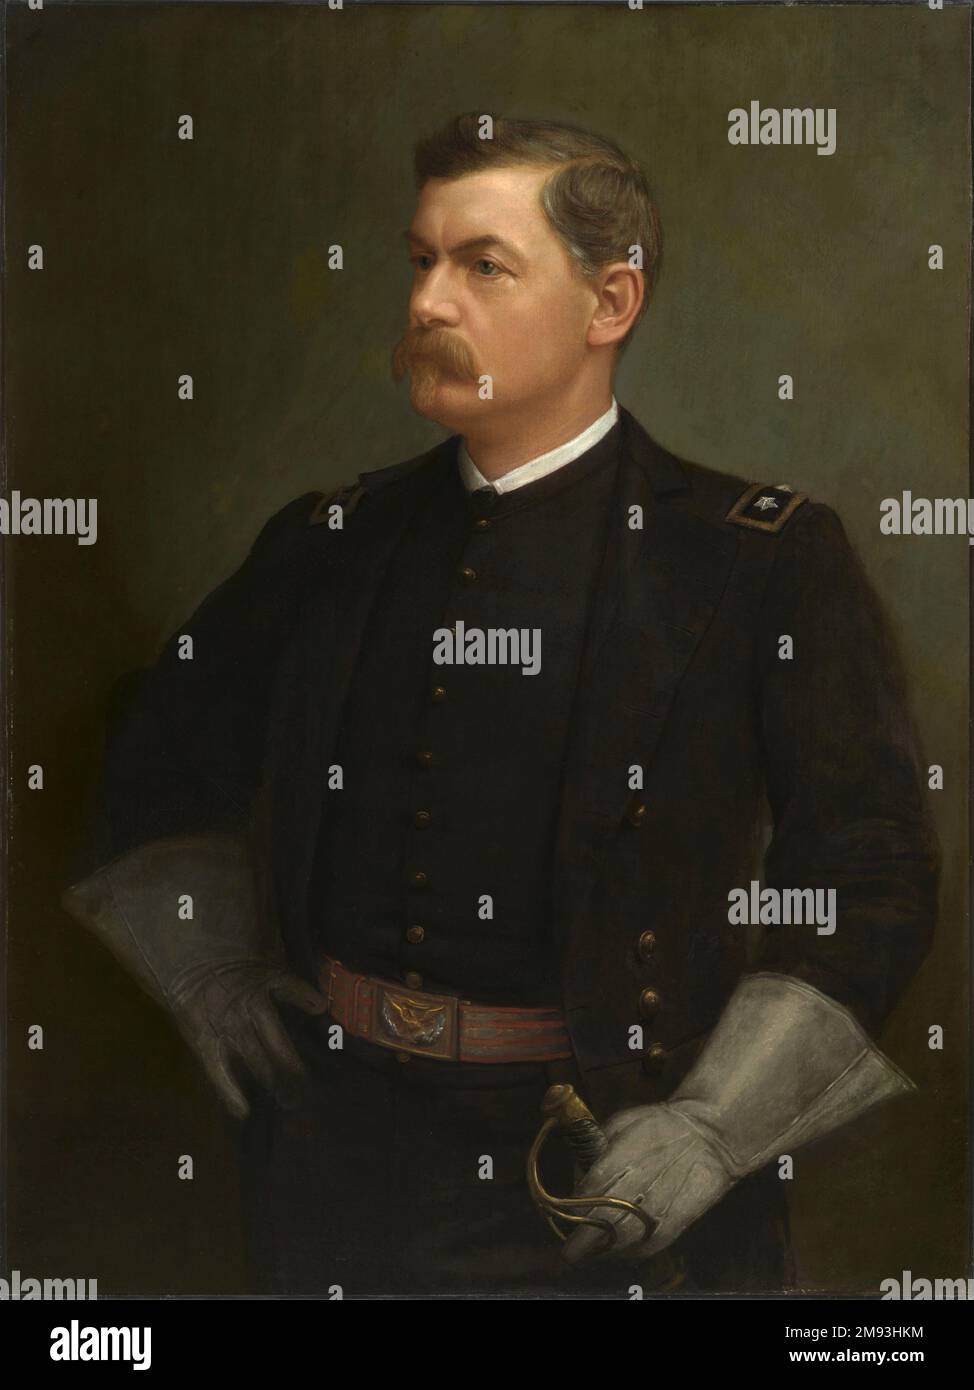 Un ritratto di George McClellan dipinto da Julien Scott. Il generale maggiore George B. McClellan comandò l'esercito del Potomac oltre a servire come generale comandante dell'esercito degli Stati Uniti durante la guerra civile americana Foto Stock